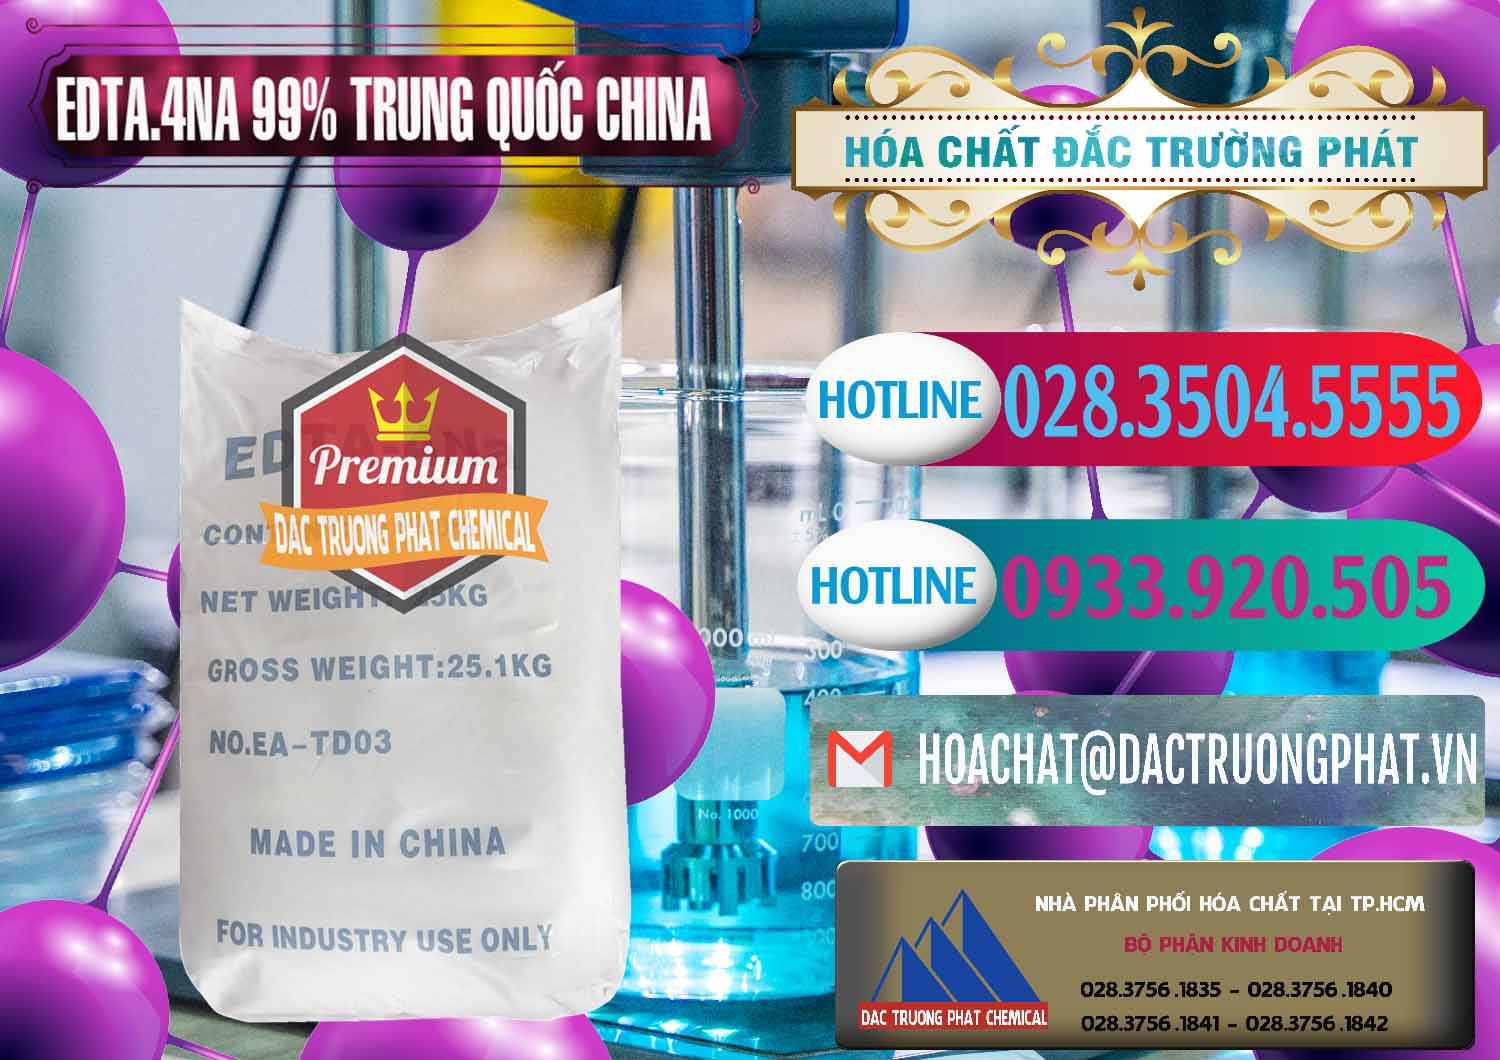 Chuyên bán - cung cấp EDTA.4NA - EDTA Muối 99% Trung Quốc China - 0292 - Đơn vị chuyên kinh doanh và phân phối hóa chất tại TP.HCM - truongphat.vn